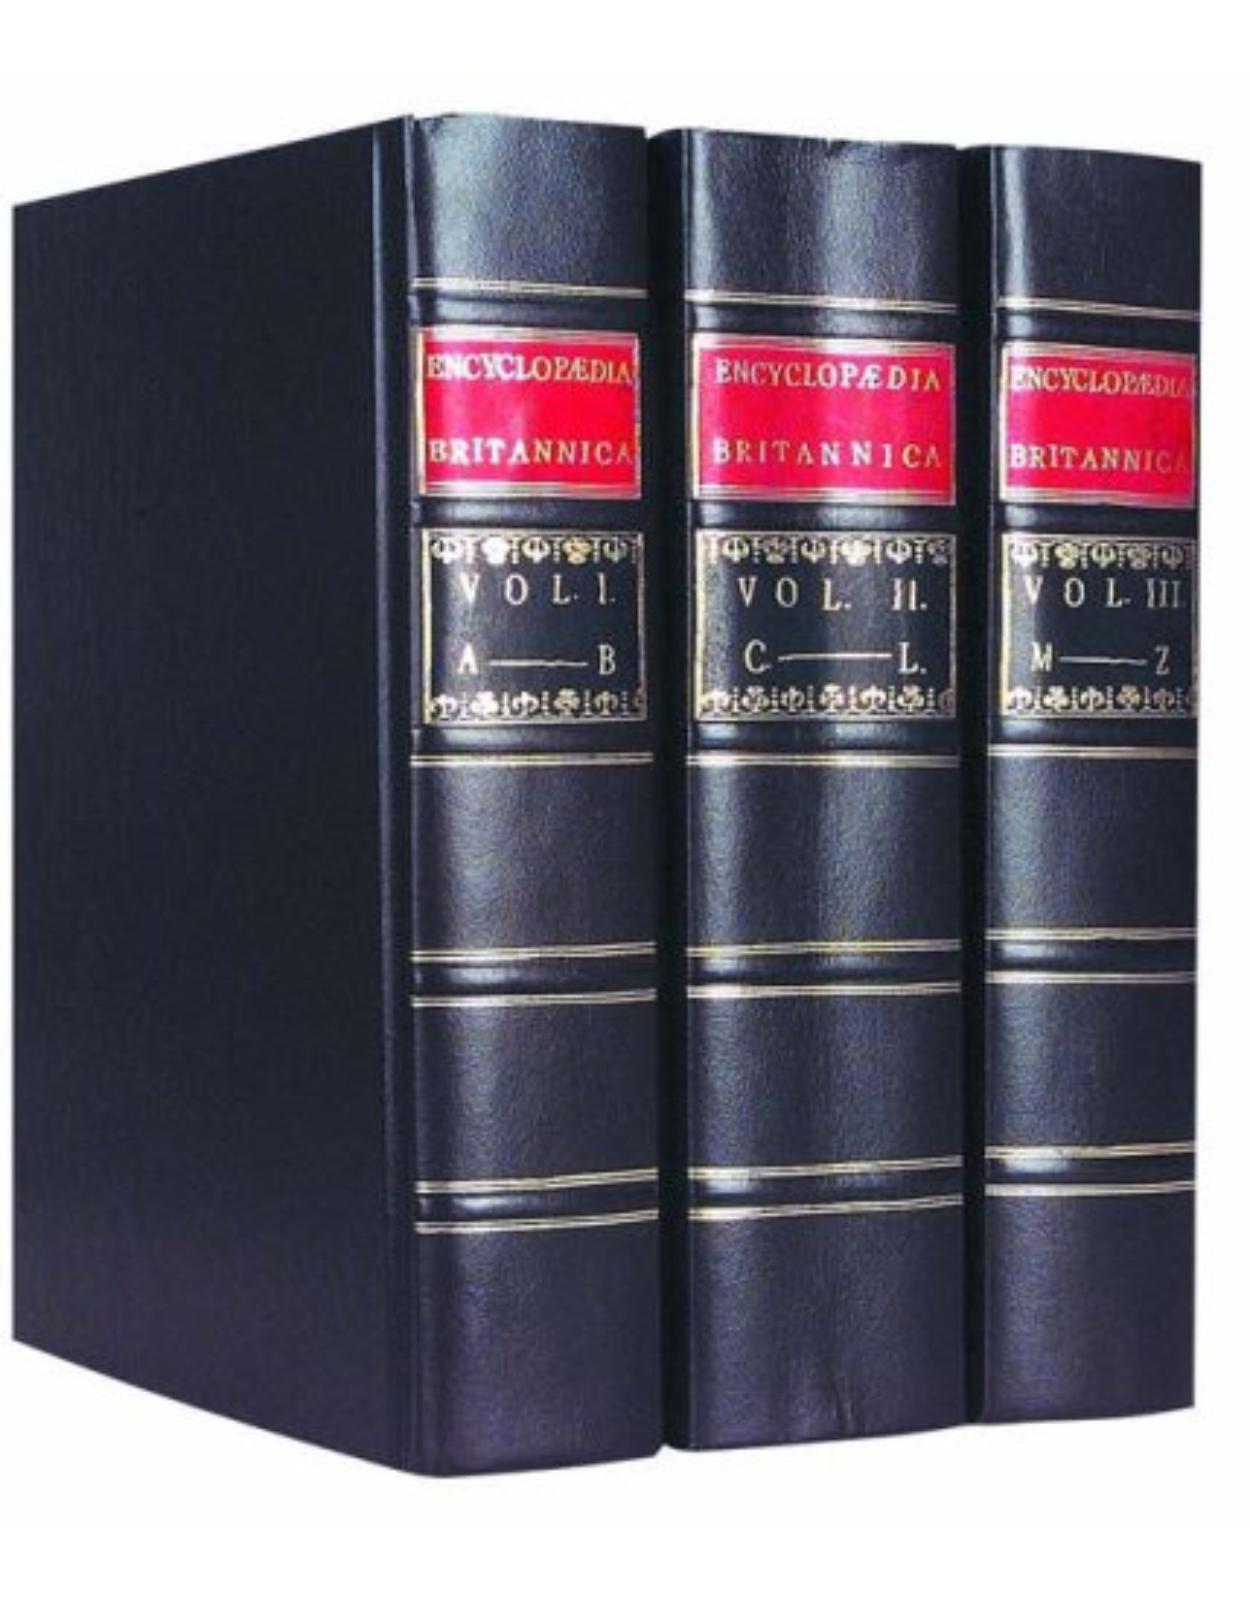 Britannica First Edition Replica Set (3 vol.)